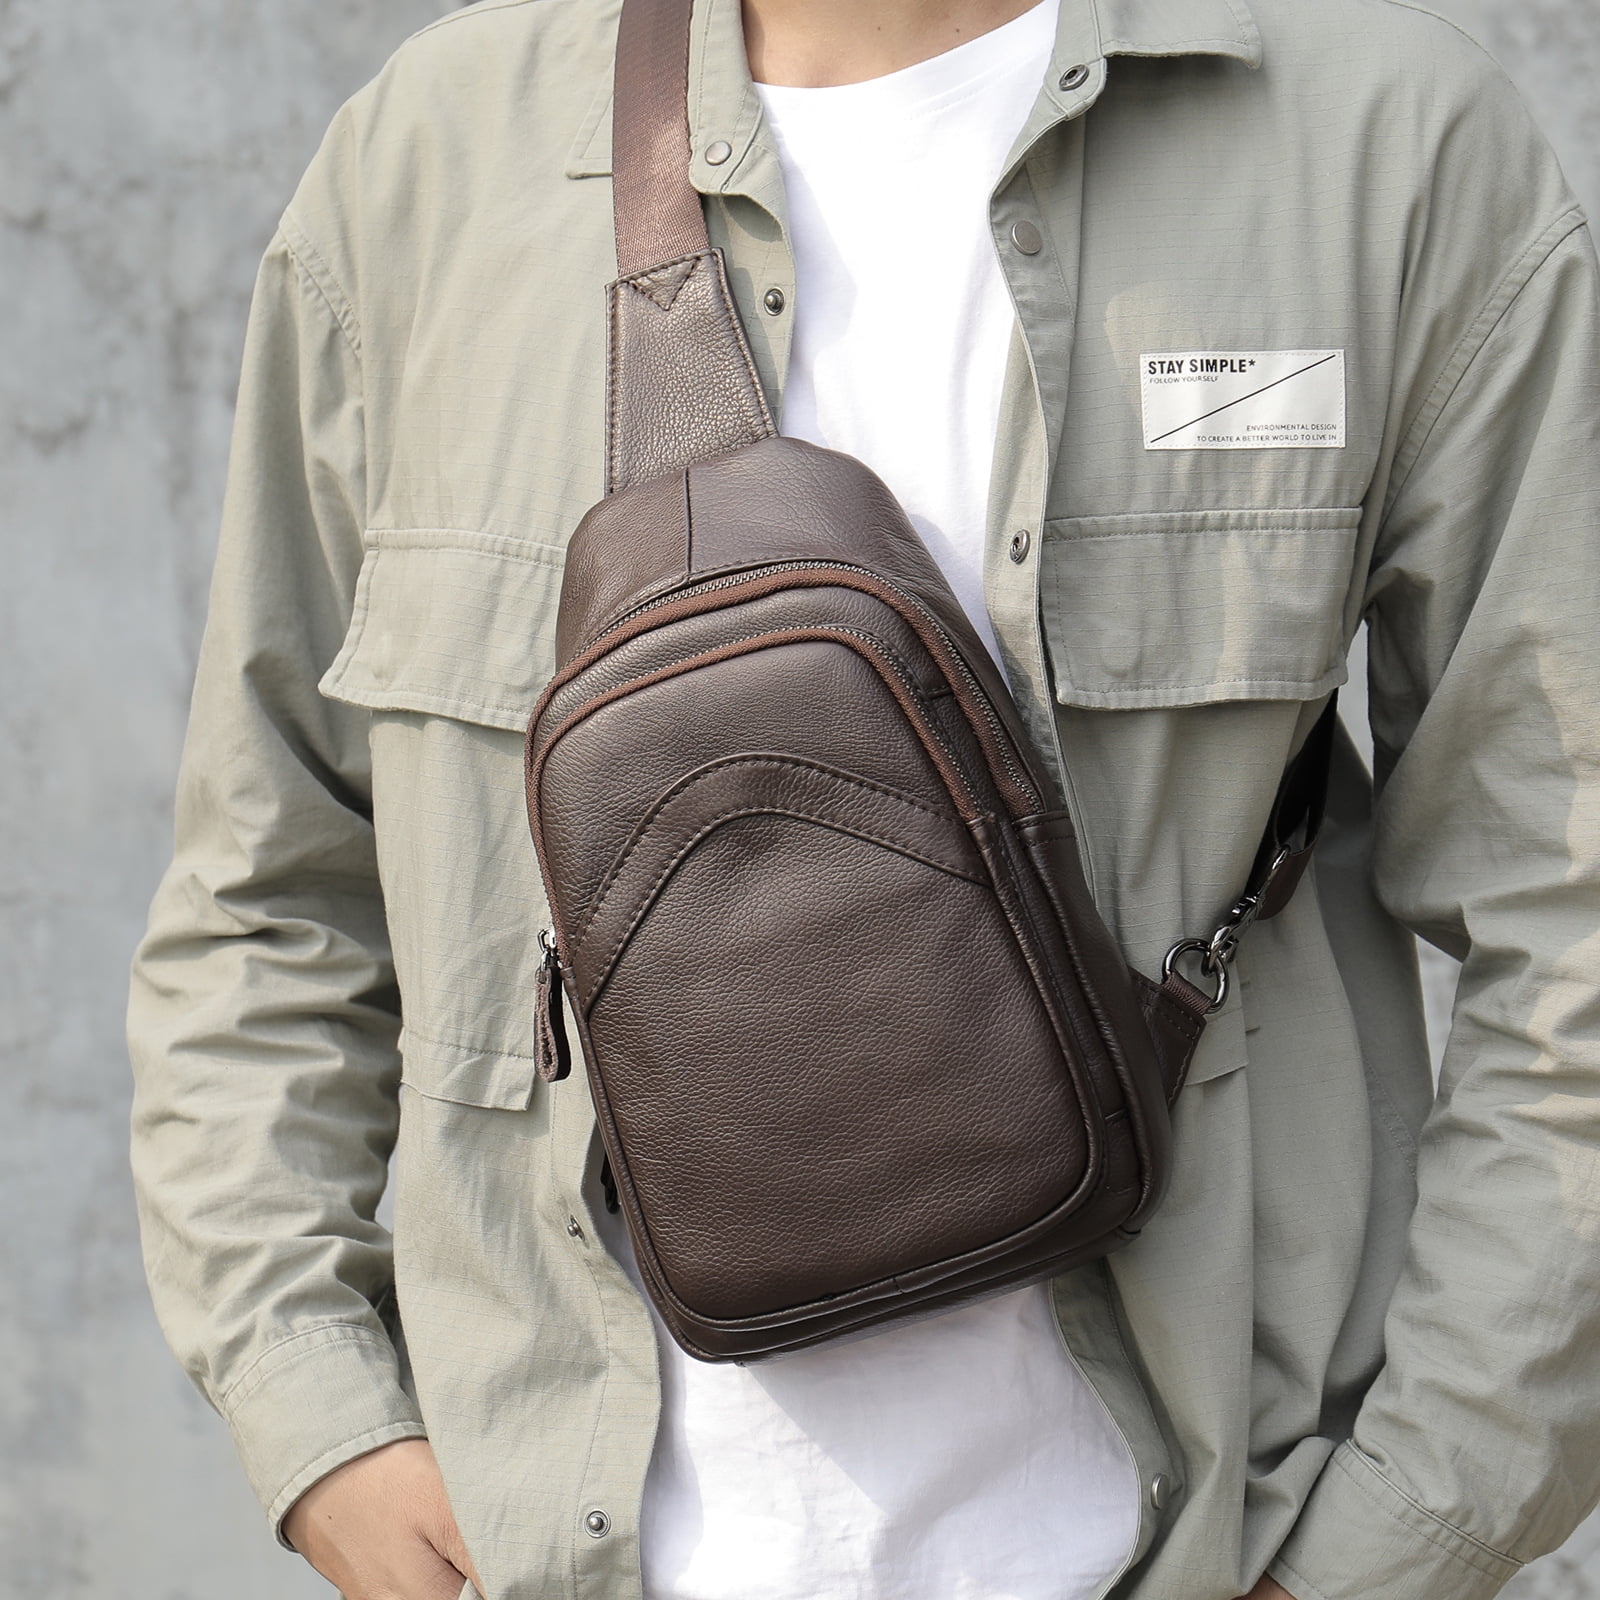 Men's Leather Shoulder Bags Travel Bag Messenger Bag Cross Body